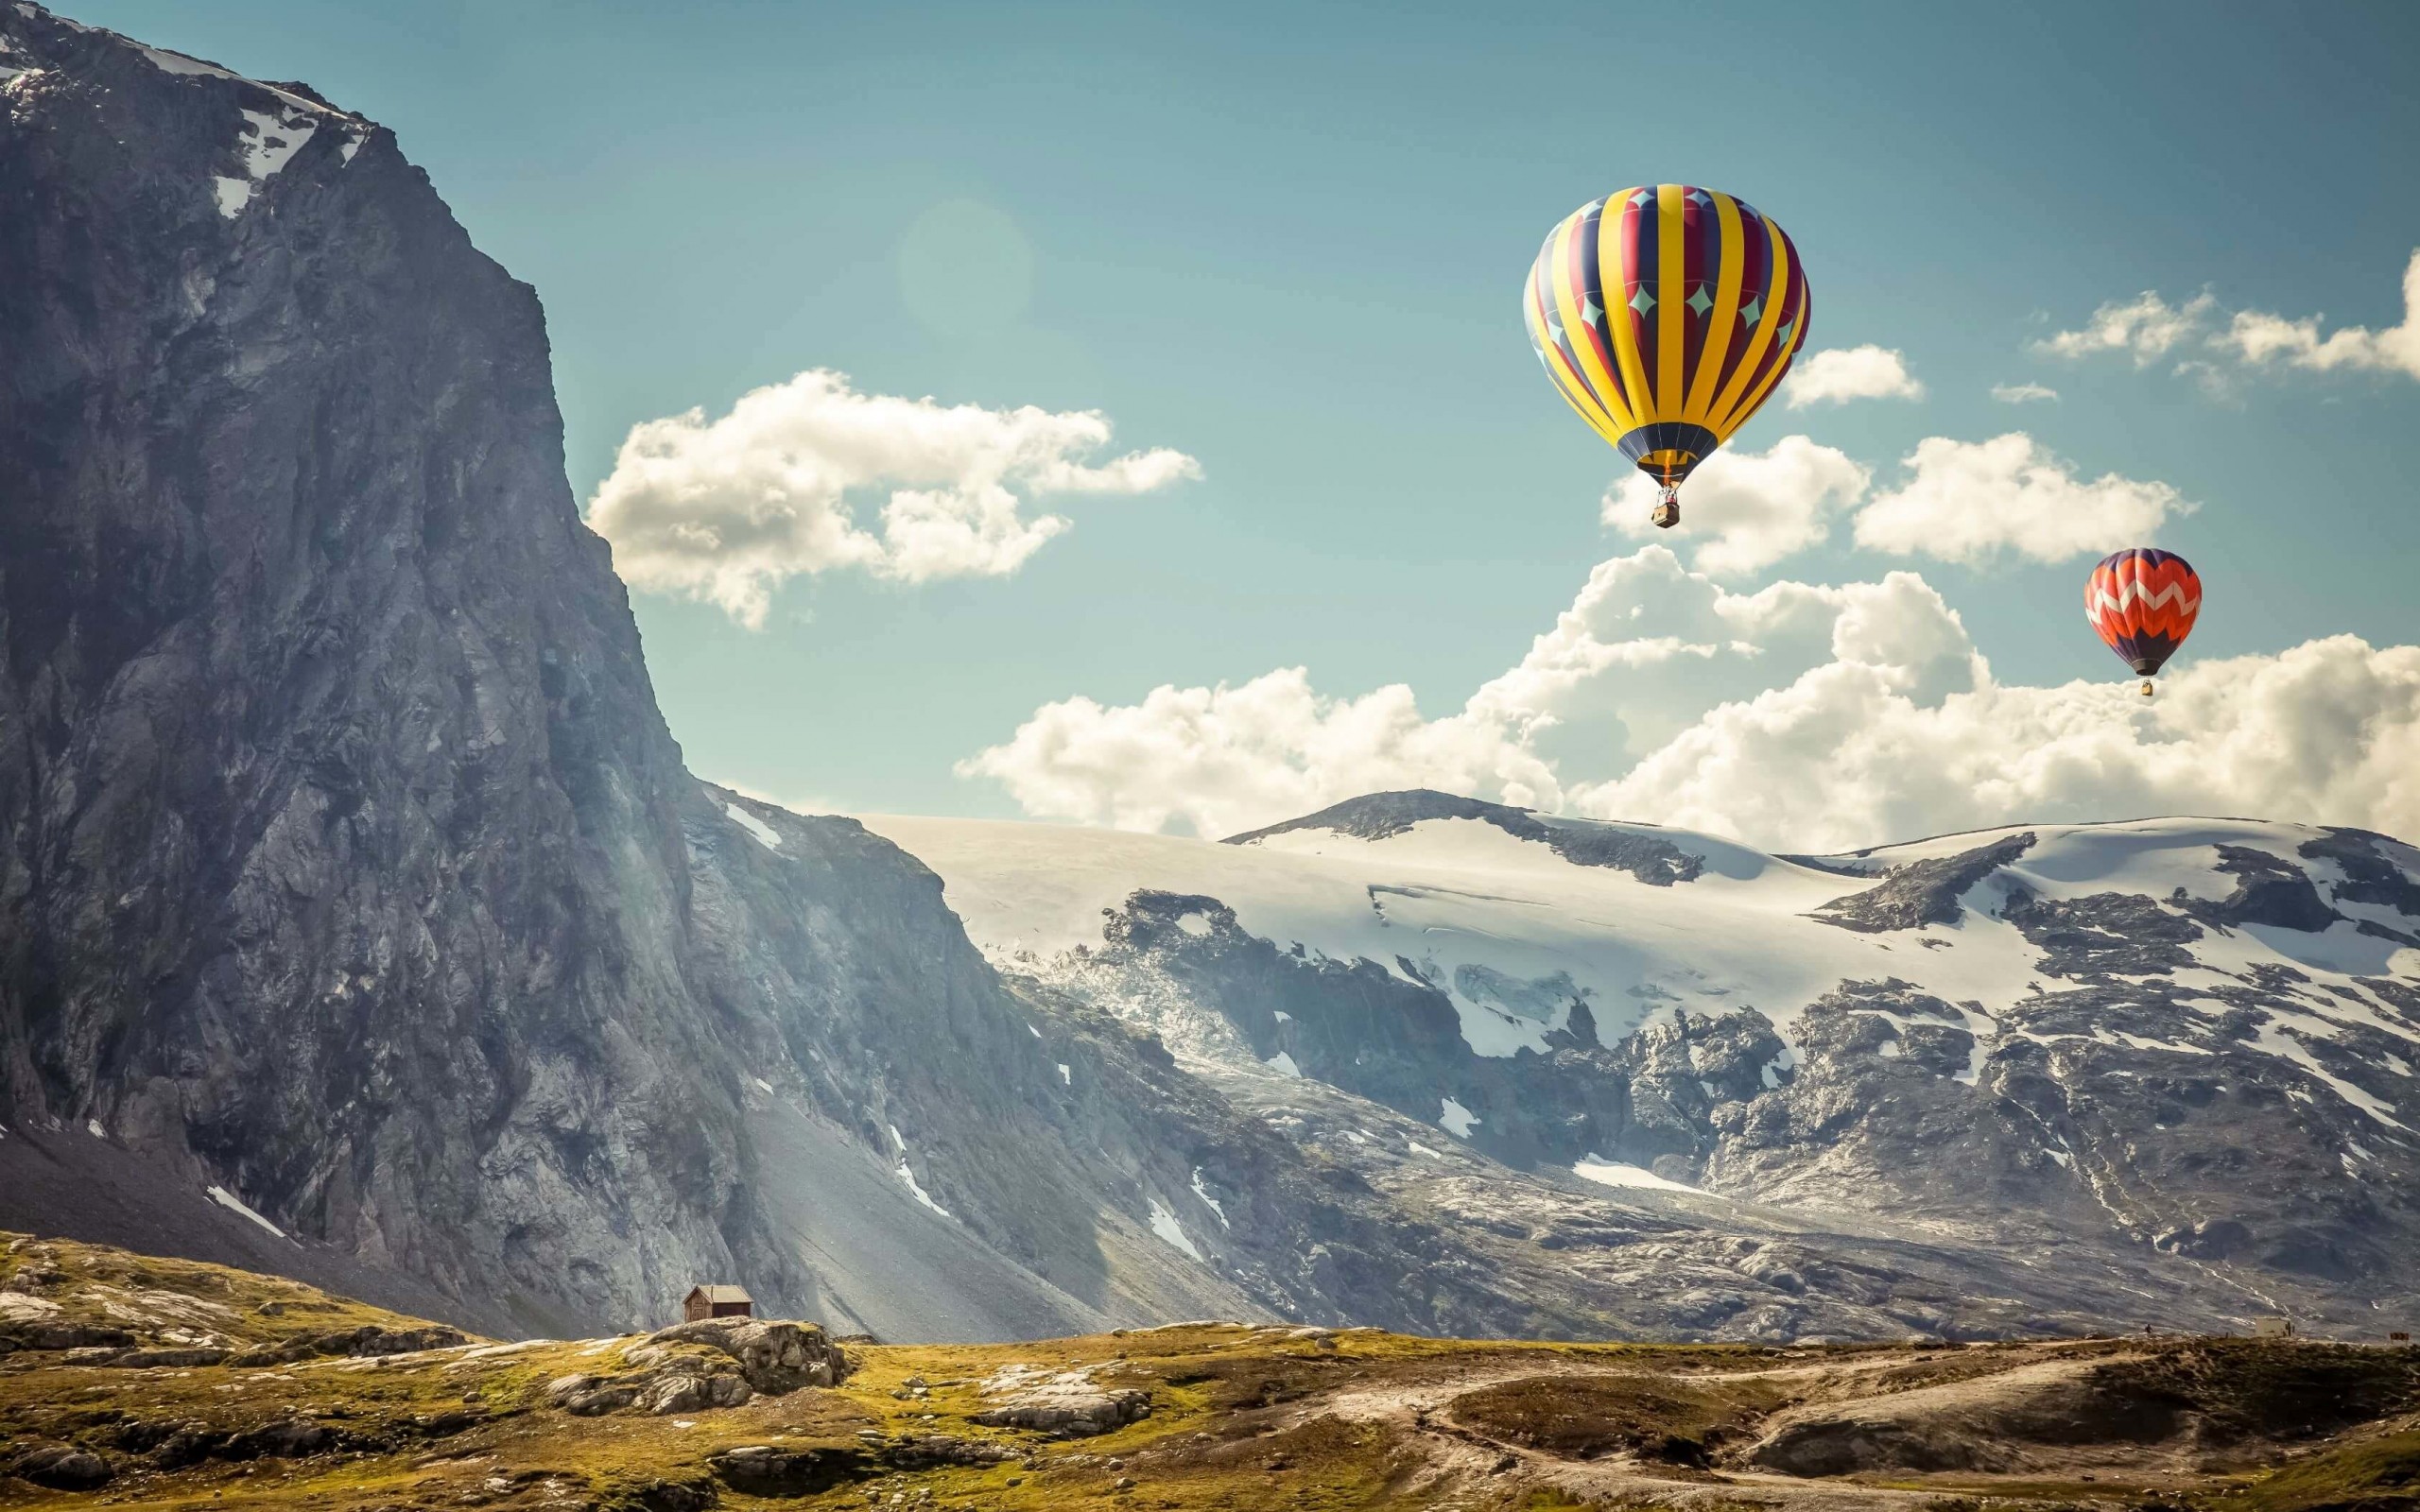 Hot Air Balloon Over the Mountain Wallpaper for Desktop 2560x1600